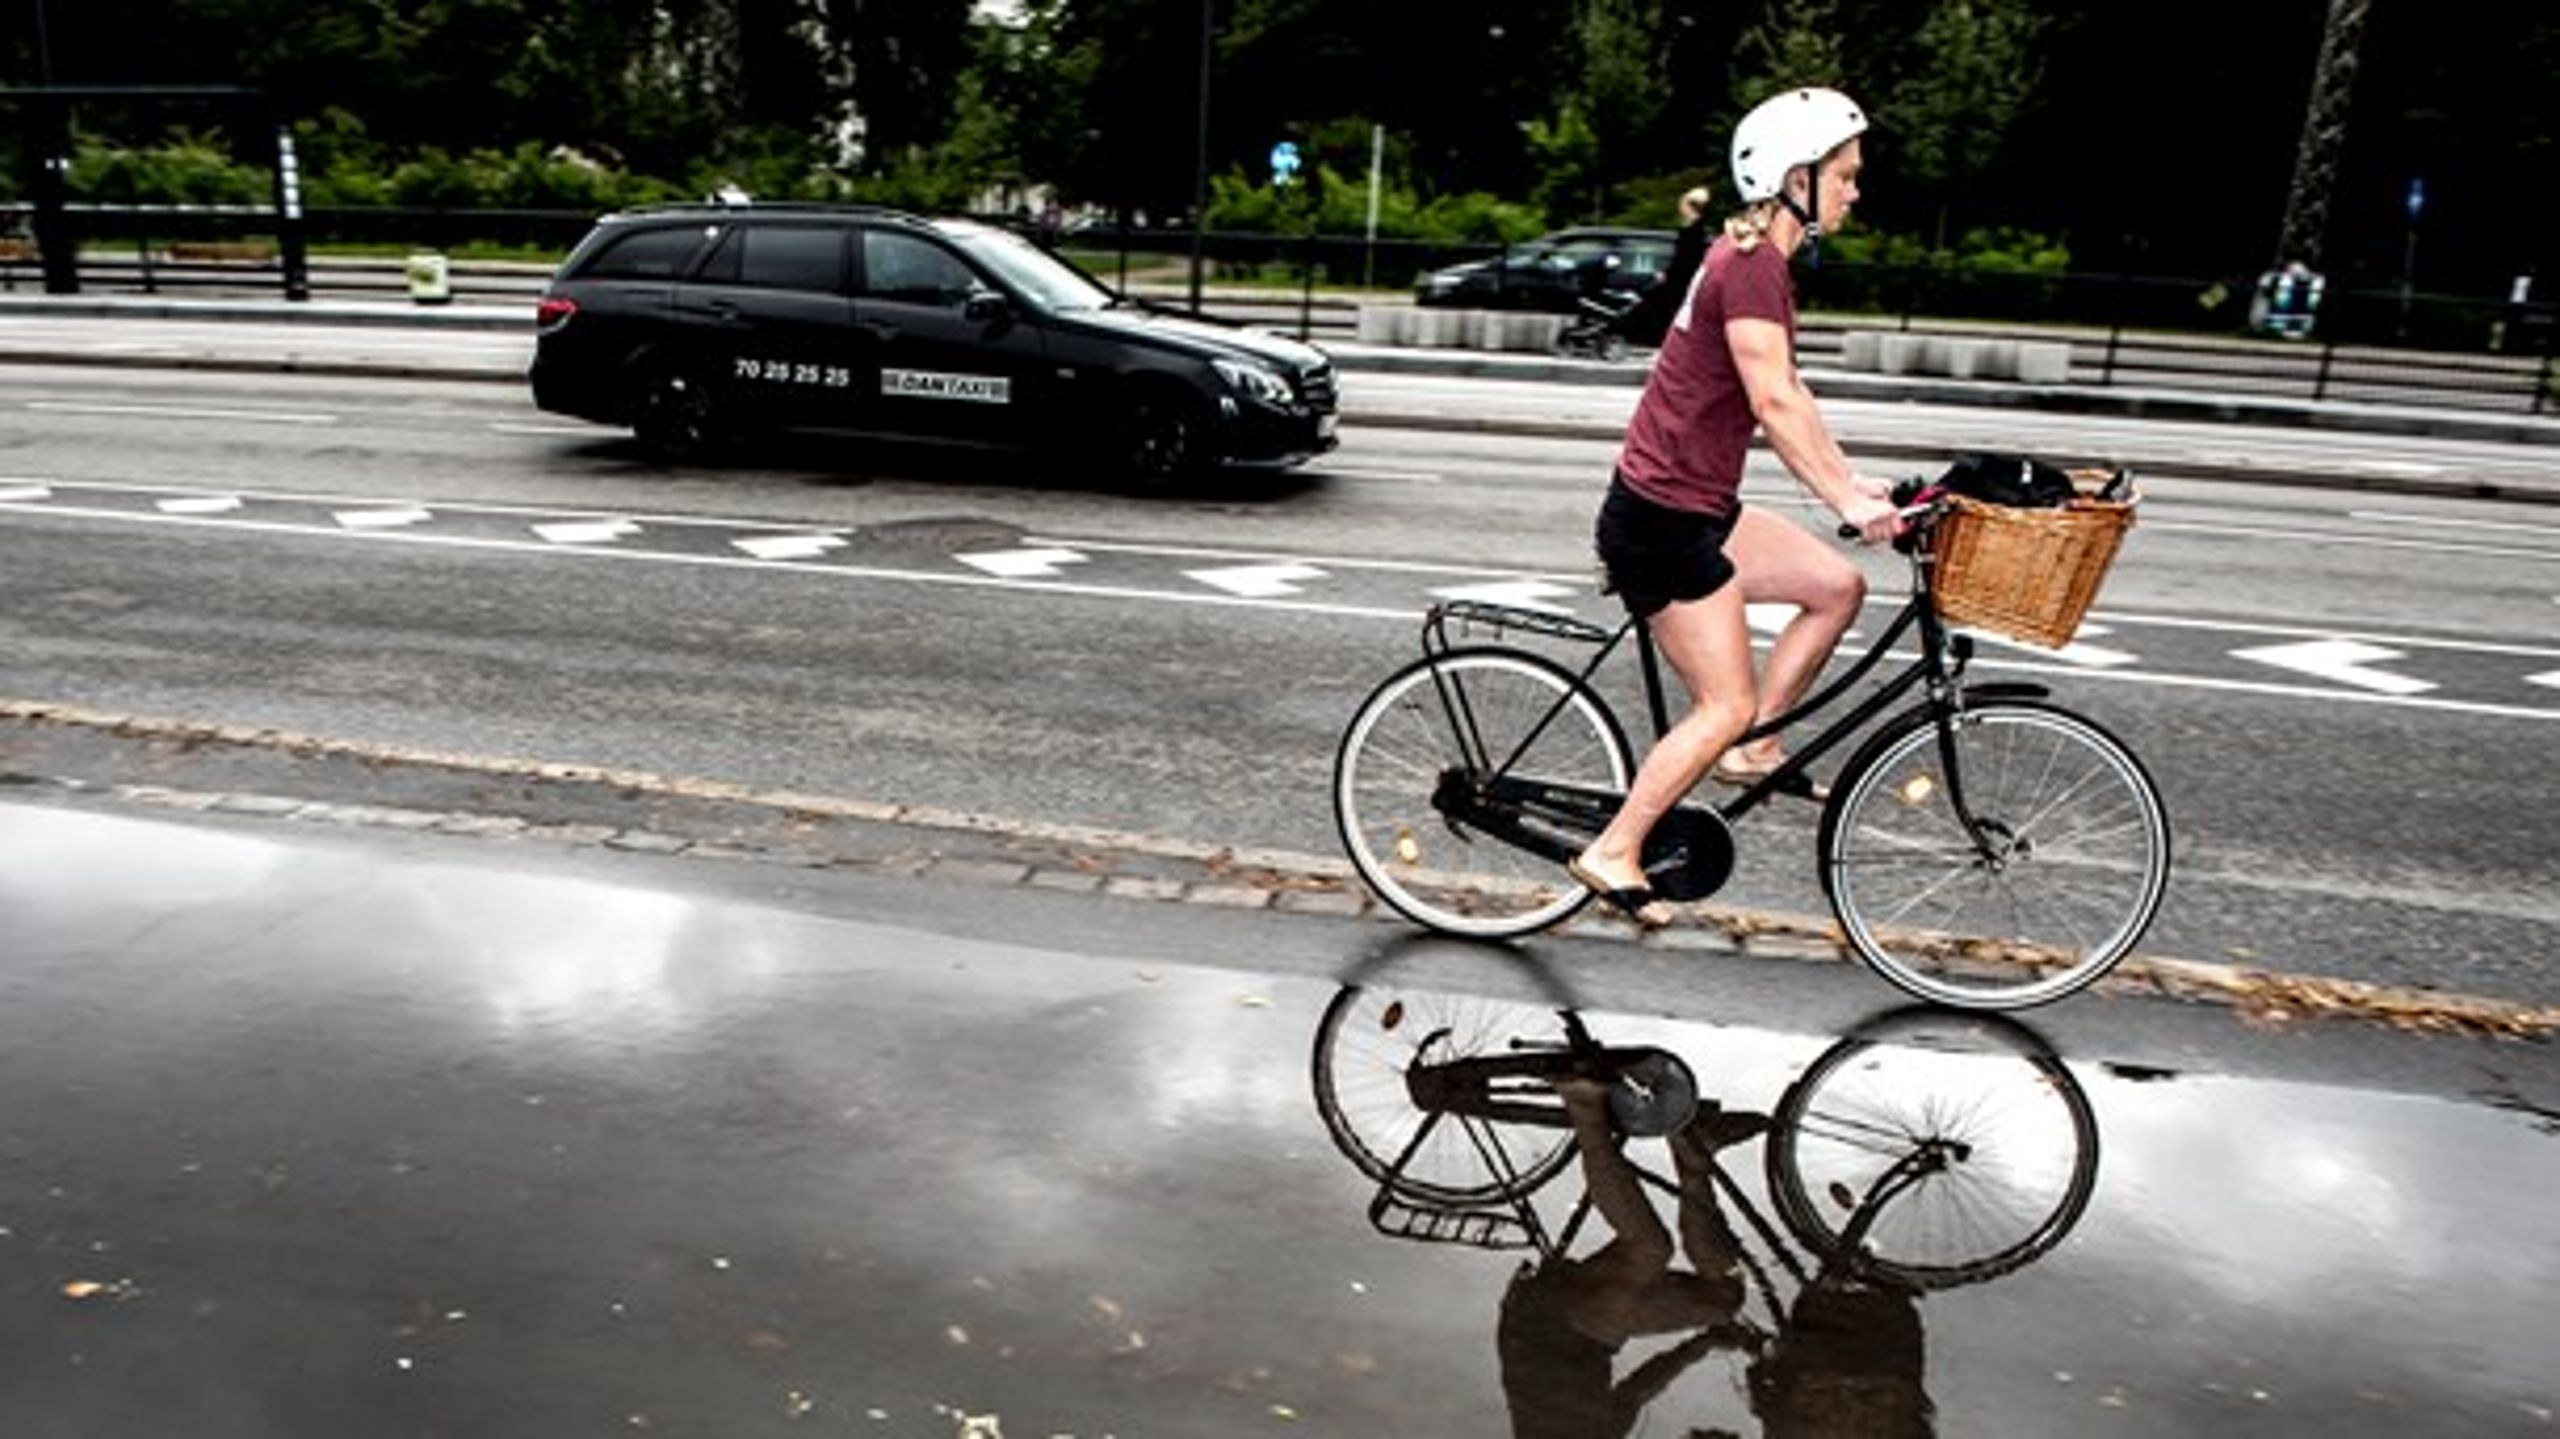 "Cykling er bæredygtig transport par excellence, og regeringerne bør gøre en øjeblikkelig indsats for klimaet ved at tænke cyklen ind i deres klimapolitik, der skal mindske transportens CO2-udslip," skriver Klaus Bondam.&nbsp;